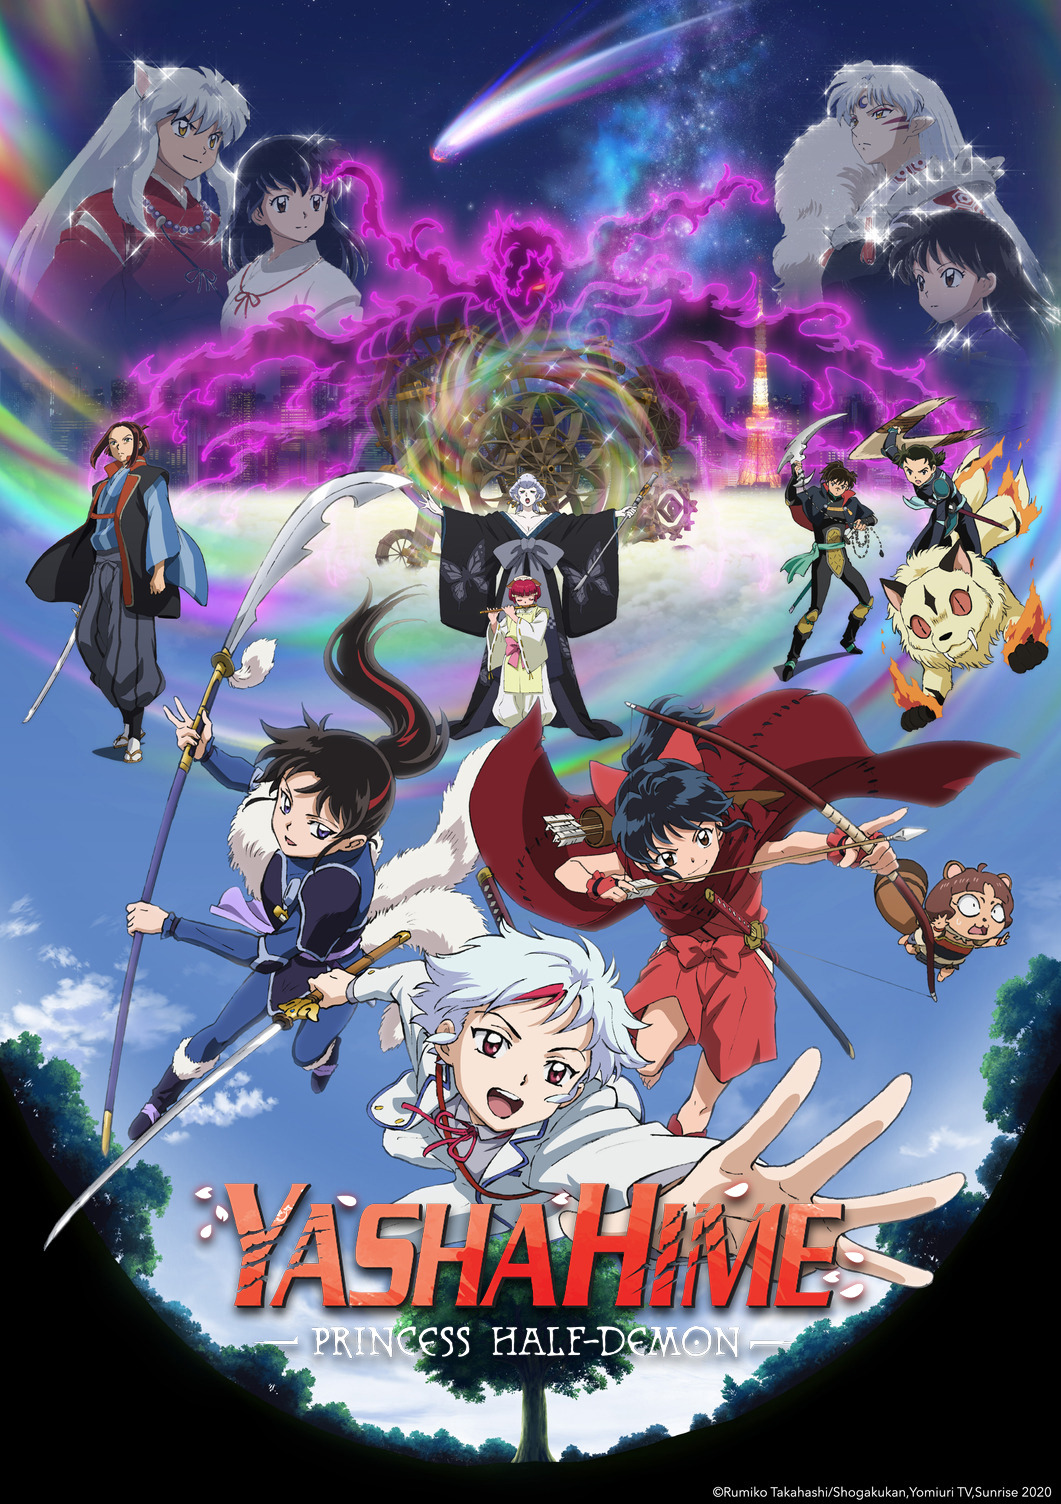 Yashahime: Princess Half-Demon–The Second Act anime key visual